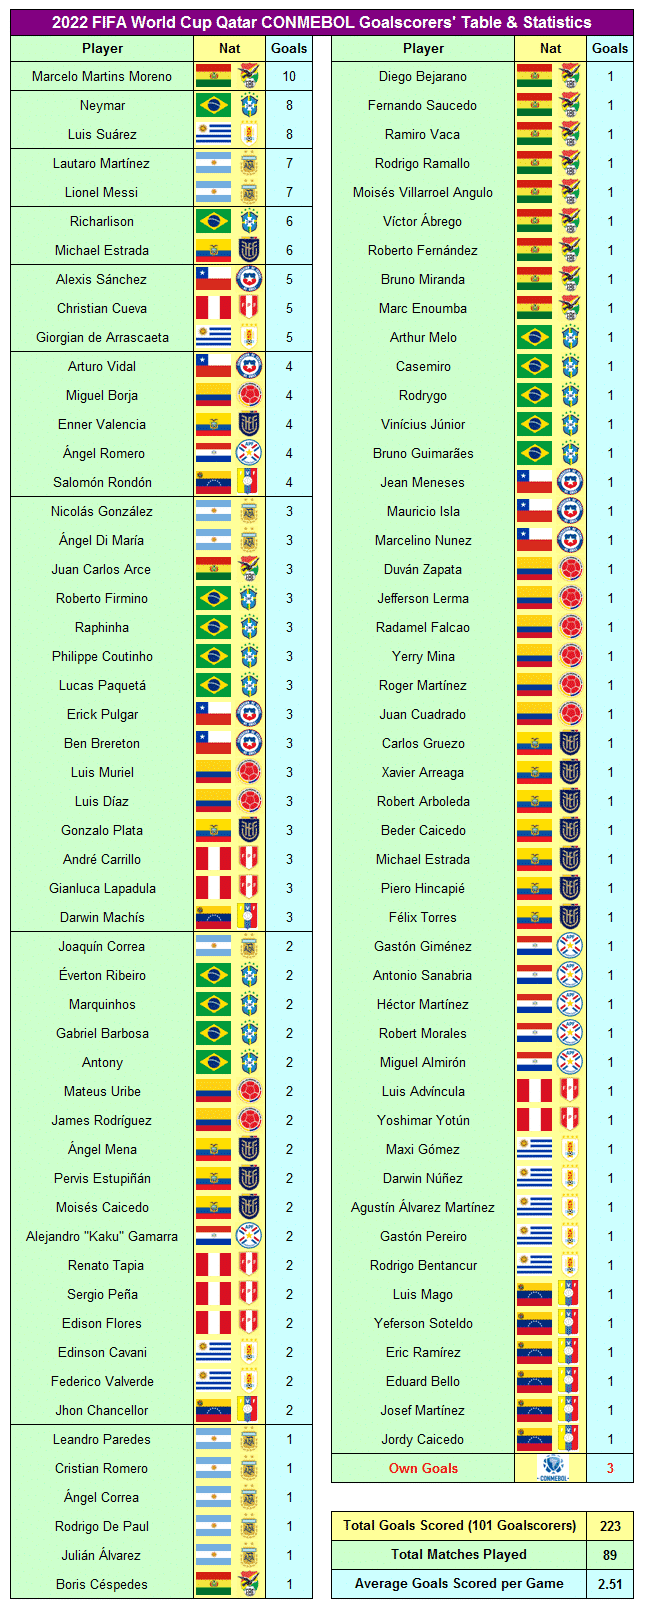 Classifica dei marcatori del Qatar della Coppa del Mondo FIFA 2022 CONMEBOL